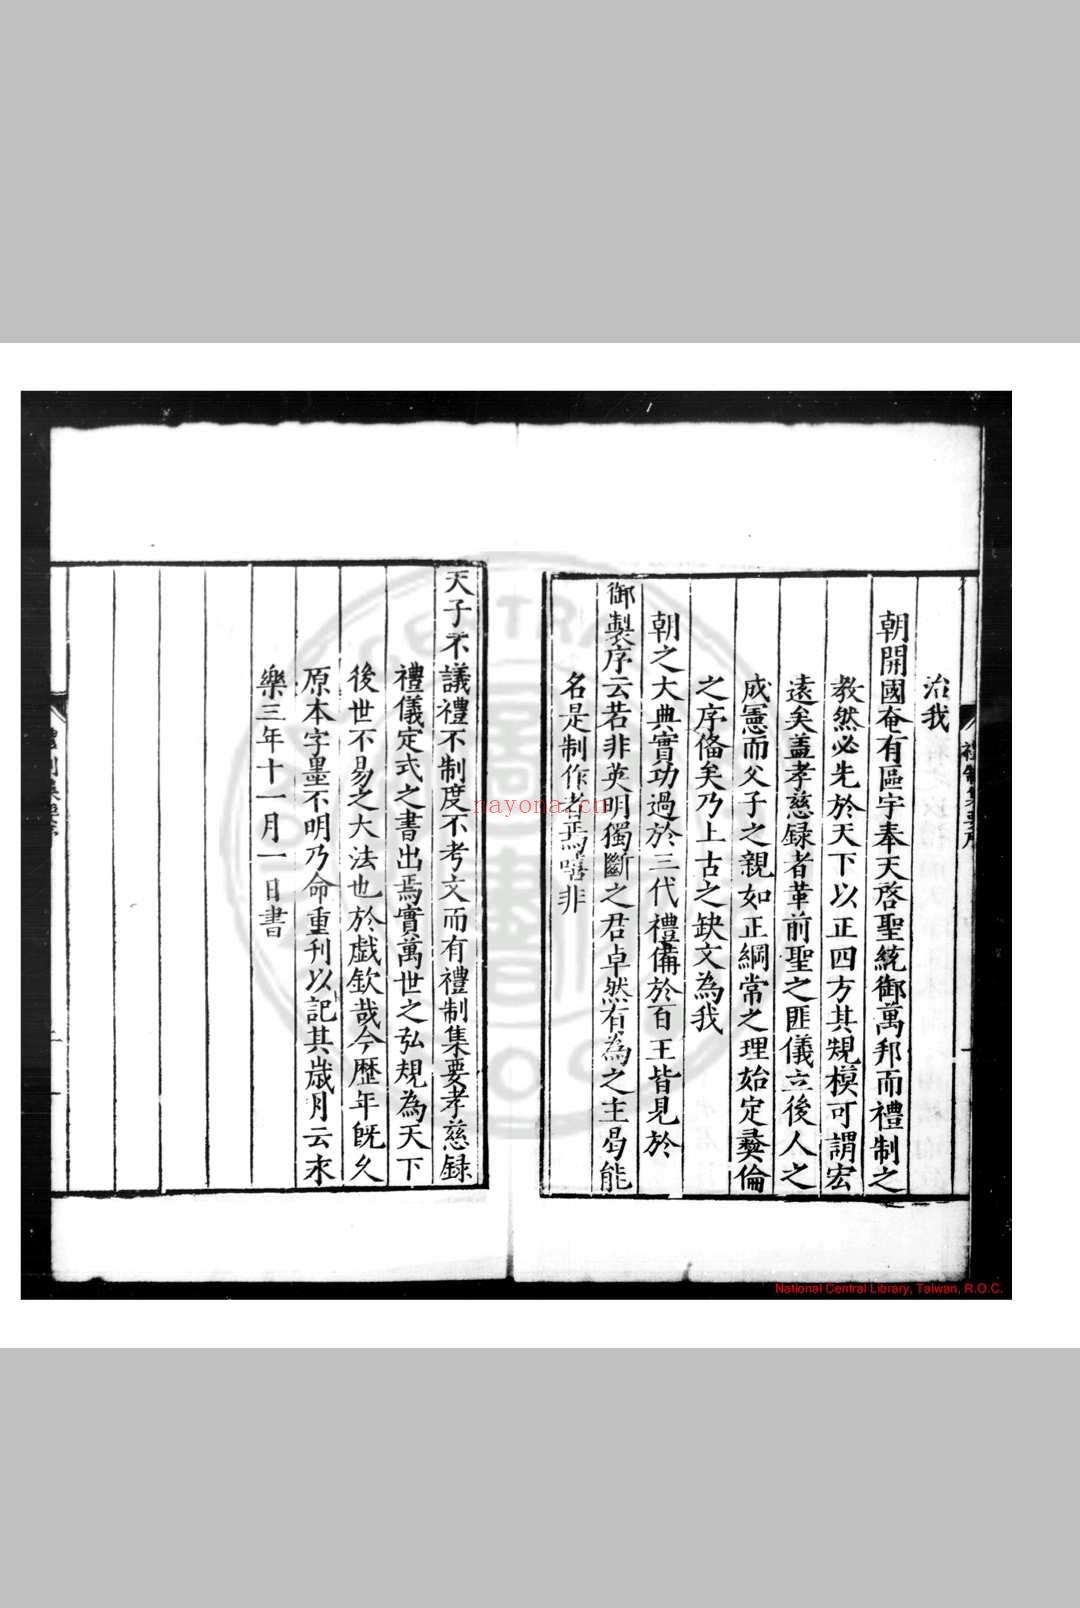 礼制集要 明太祖敕撰 明嘉靖间(1522-1566)宁藩宗室朱宸洪刊本